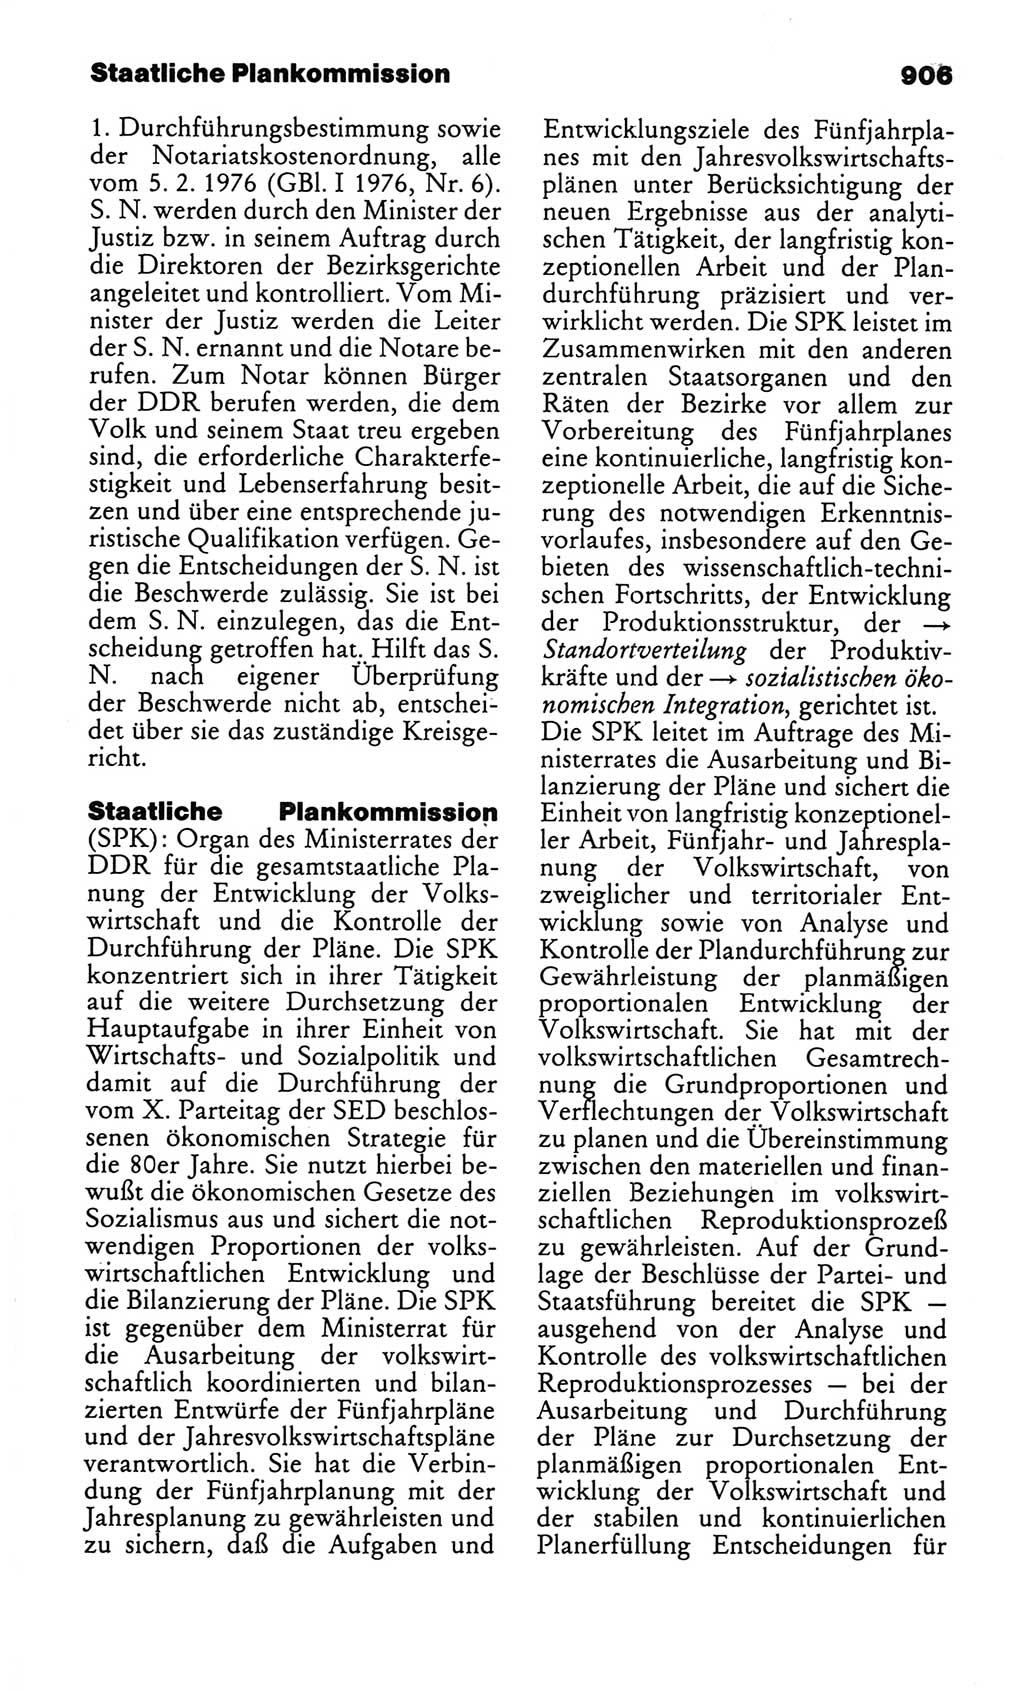 Kleines politisches Wörterbuch [Deutsche Demokratische Republik (DDR)] 1986, Seite 906 (Kl. pol. Wb. DDR 1986, S. 906)